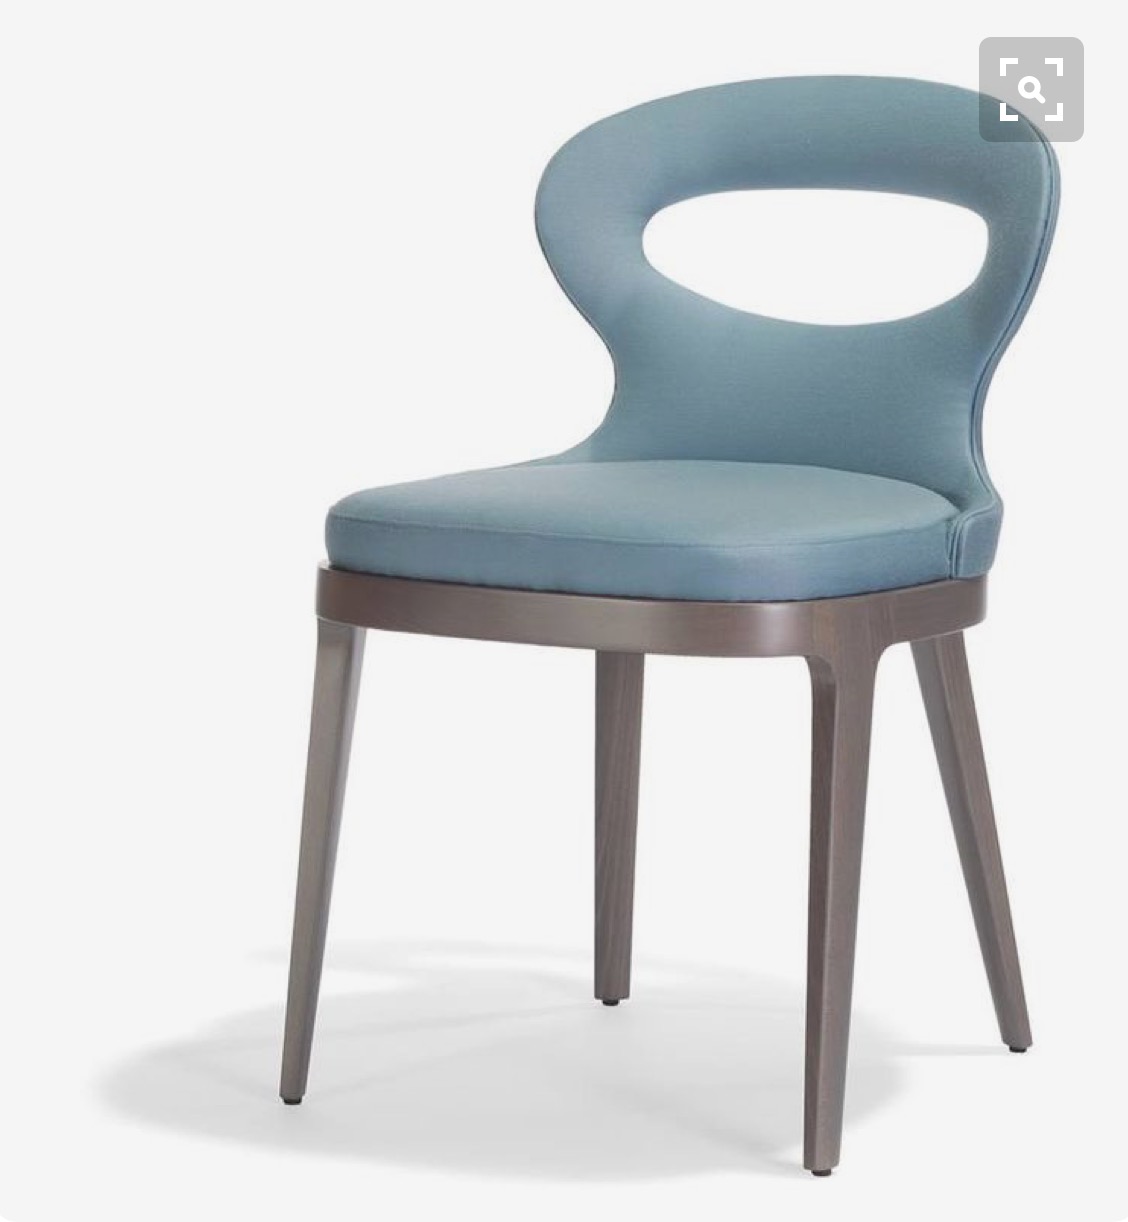 宾馆单椅颜色多样结实耐用仁力家具厂可订做各种椅子